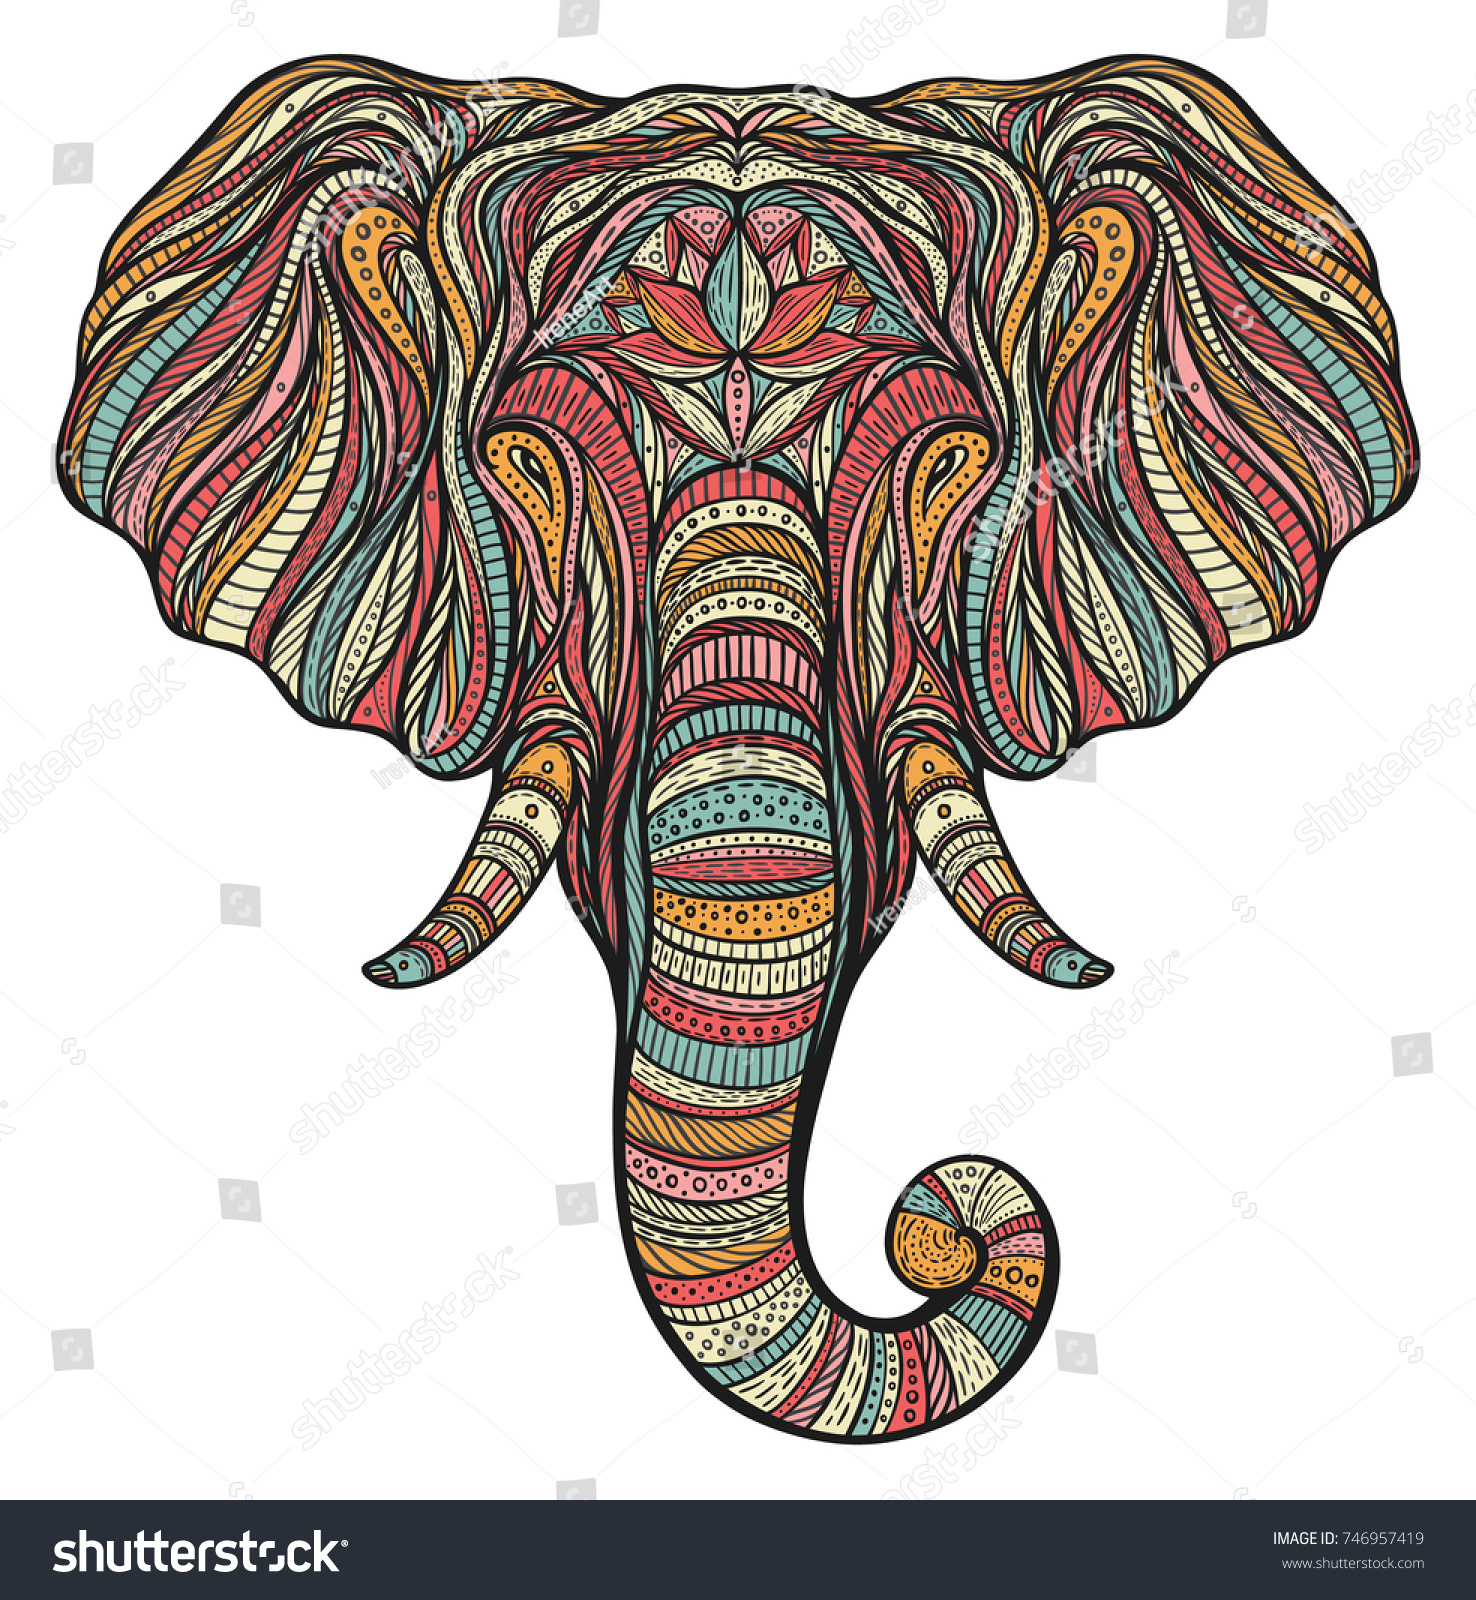 SVG of Stylized ethnic boho elephant portrait isolated on white background. Decorative hand drawn doodle vector illustration svg